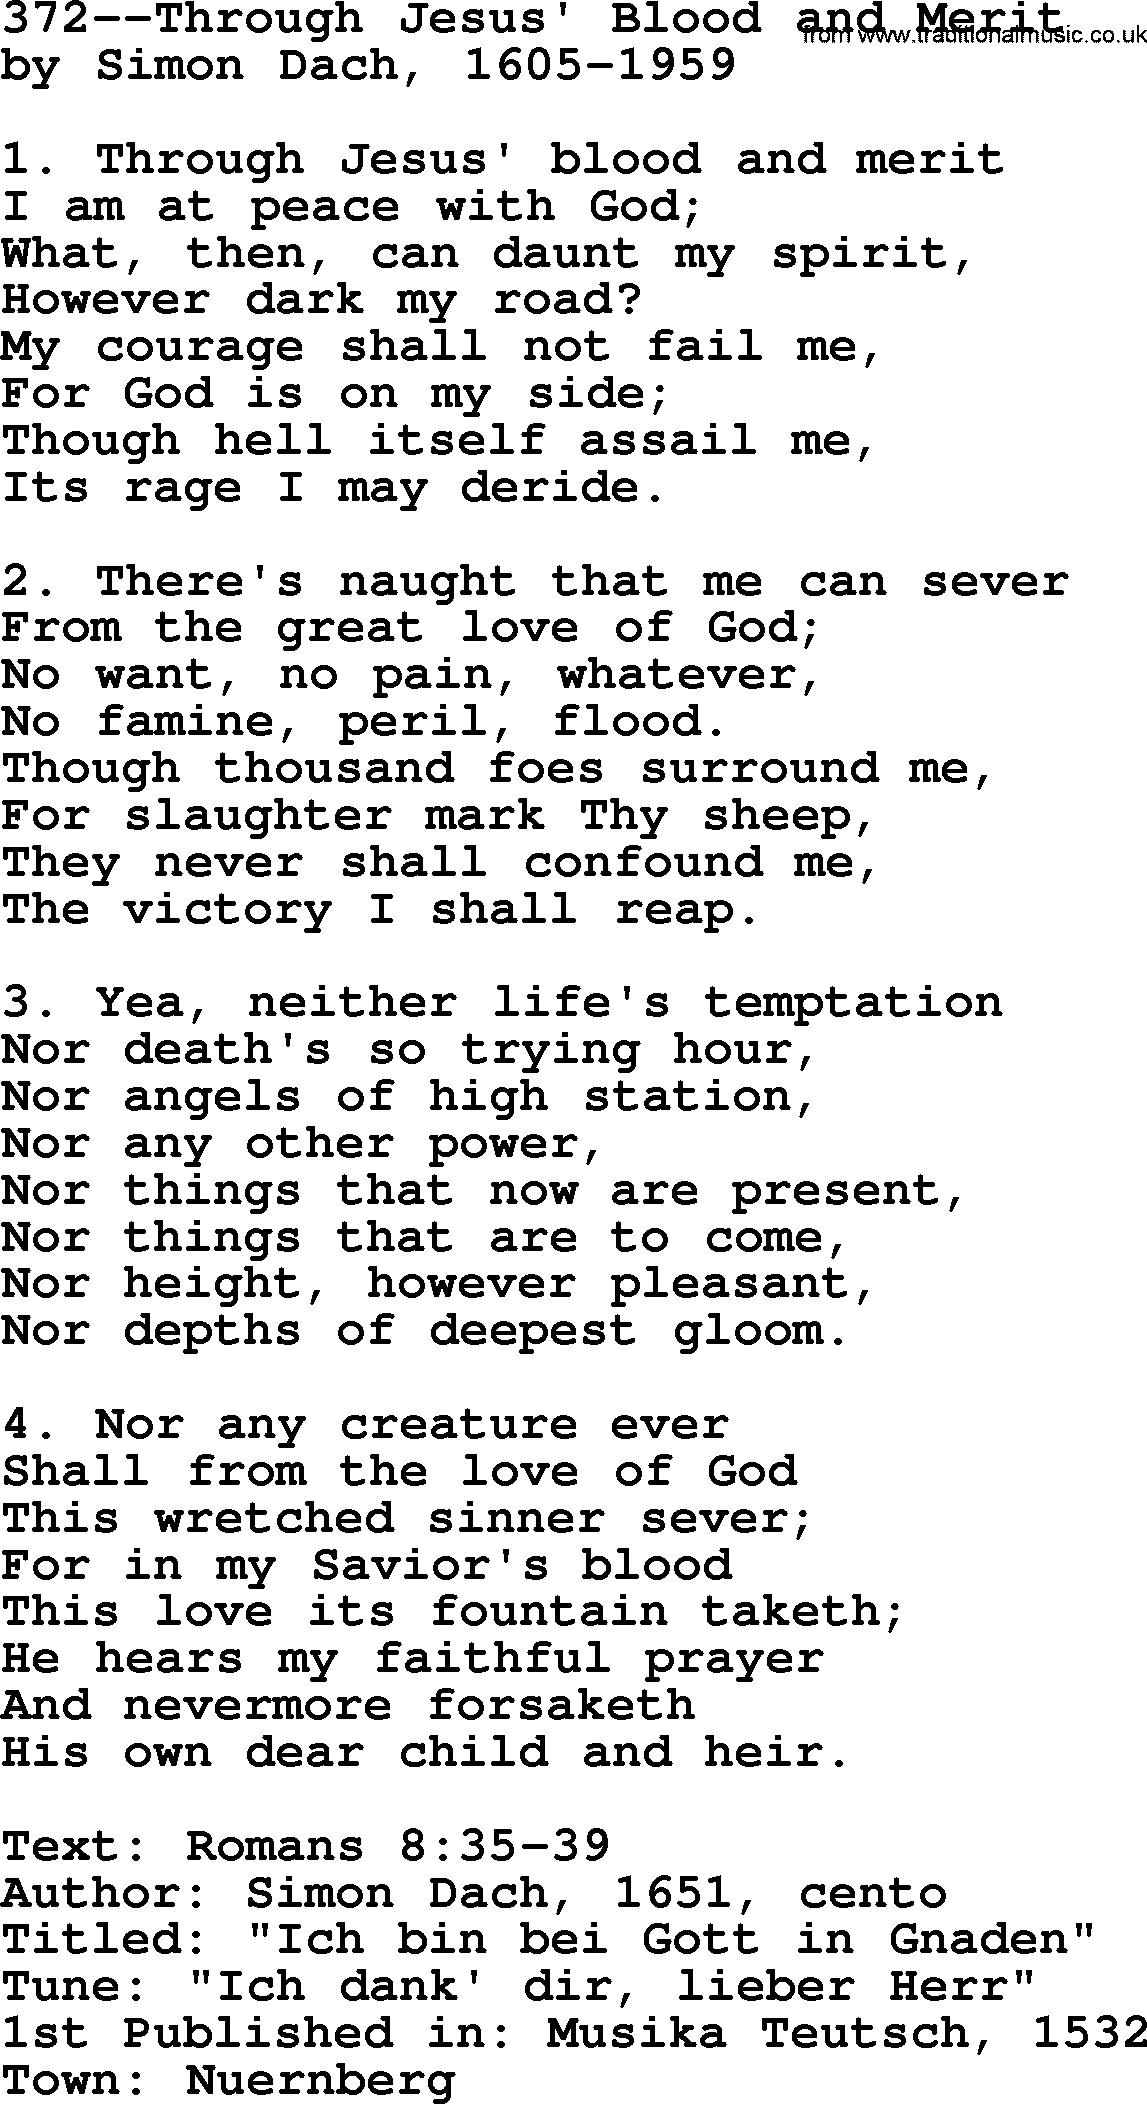 Lutheran Hymn: 372--Through Jesus' Blood and Merit.txt lyrics with PDF